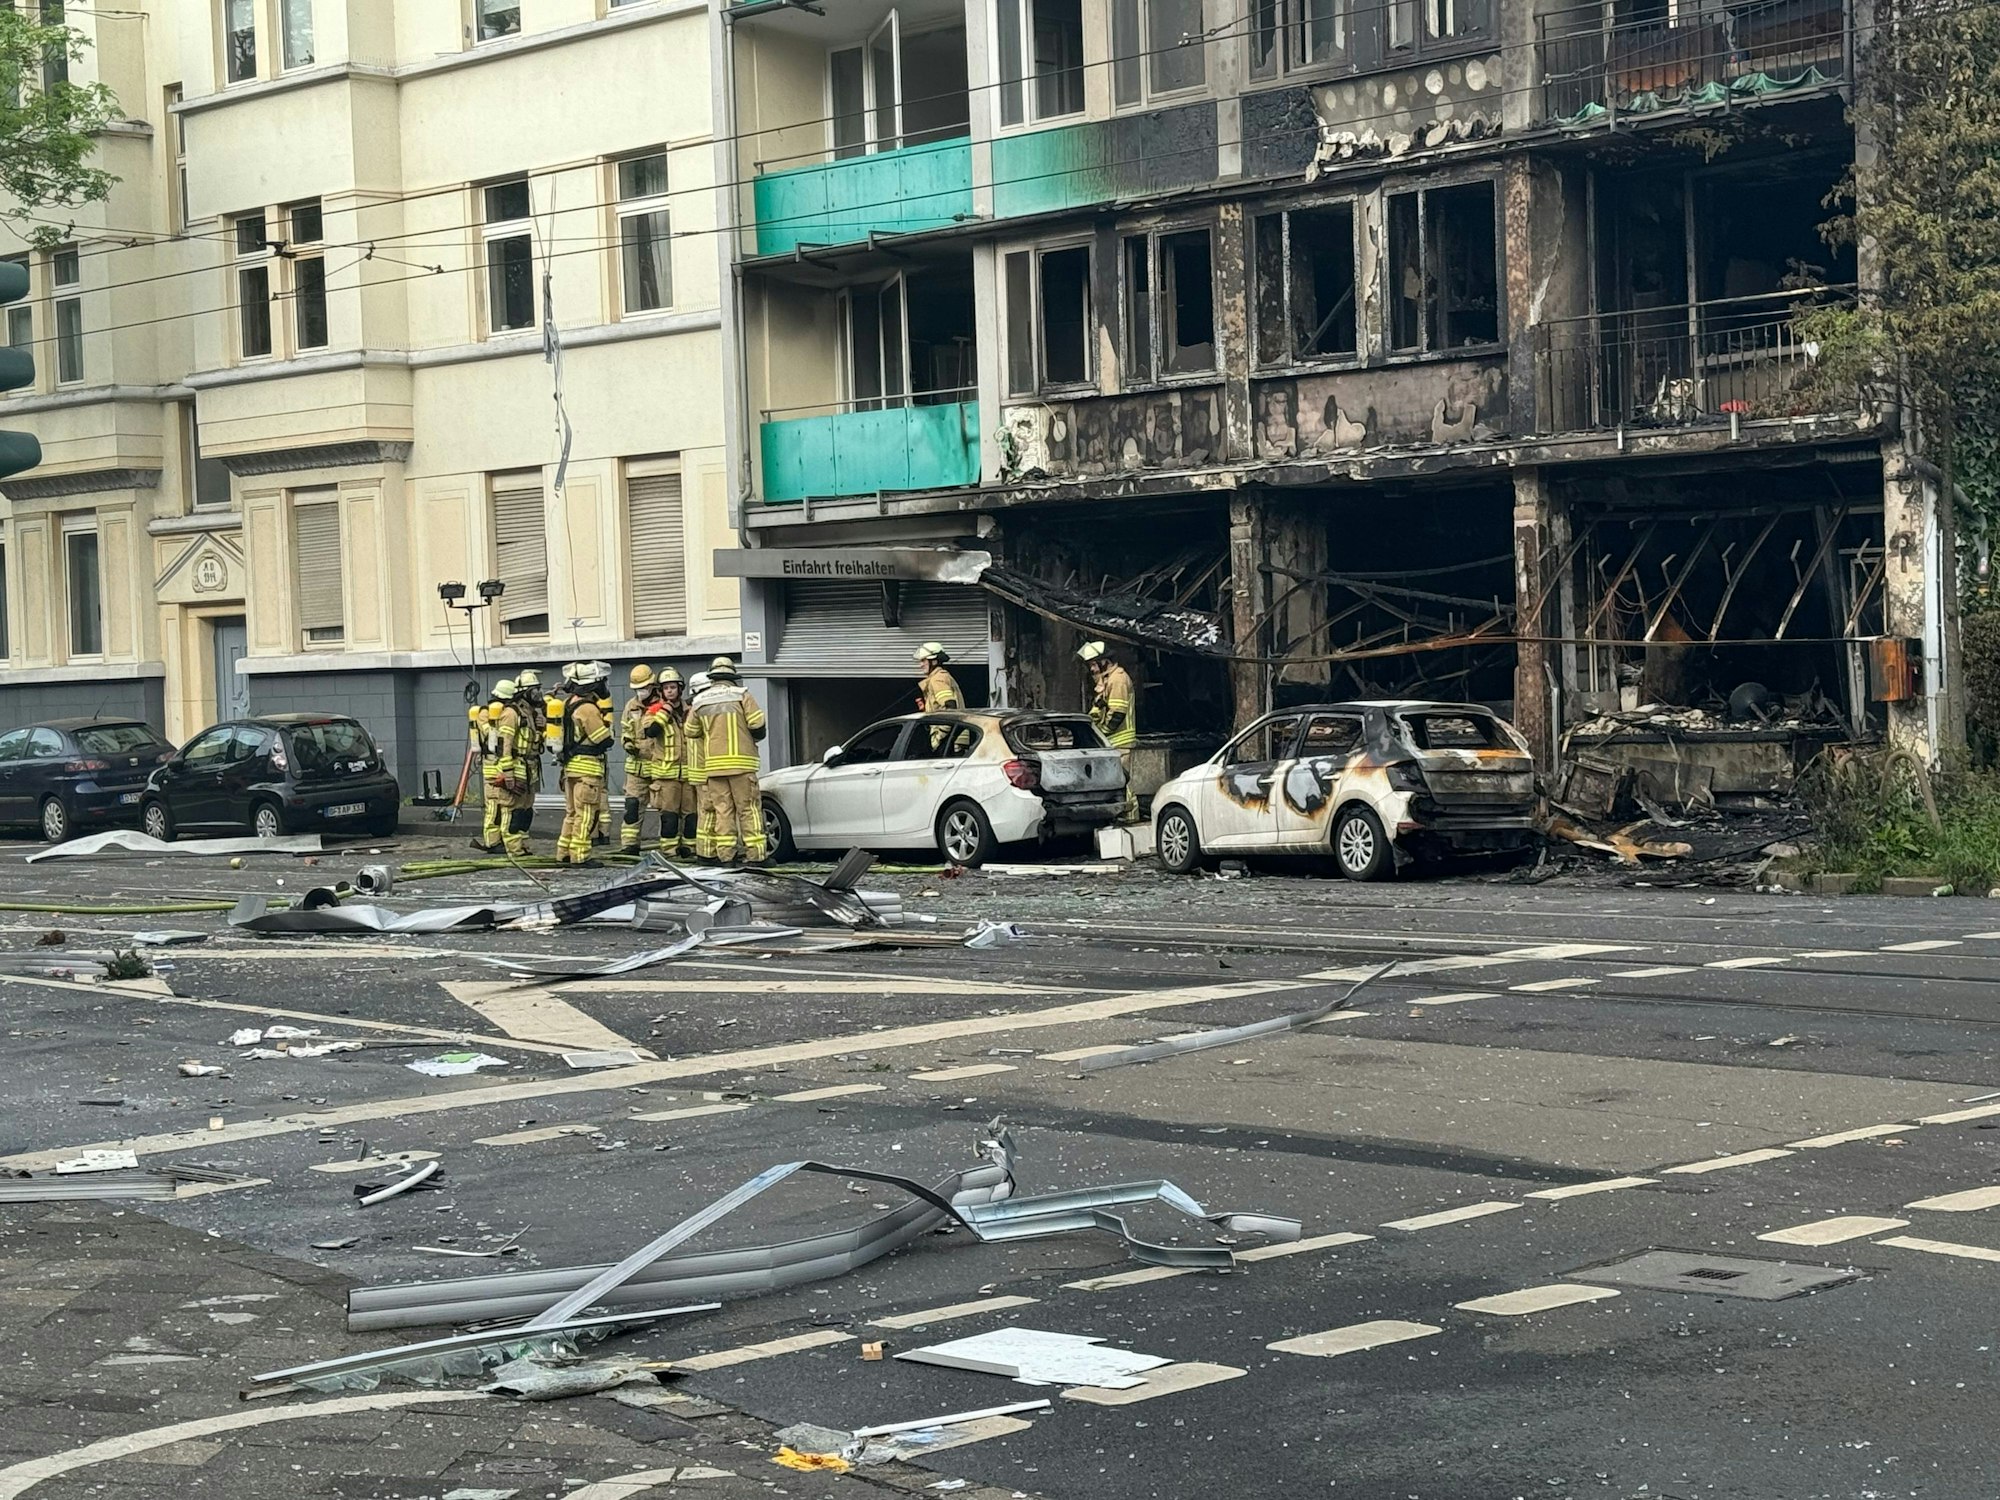 Der Kiosk und das darüberliegende Wohnhaus an der Lichtstraße/Ecke Grafenberger Allee in Düsseldorf sind nach einem Feuer komplett ausgebrannt.